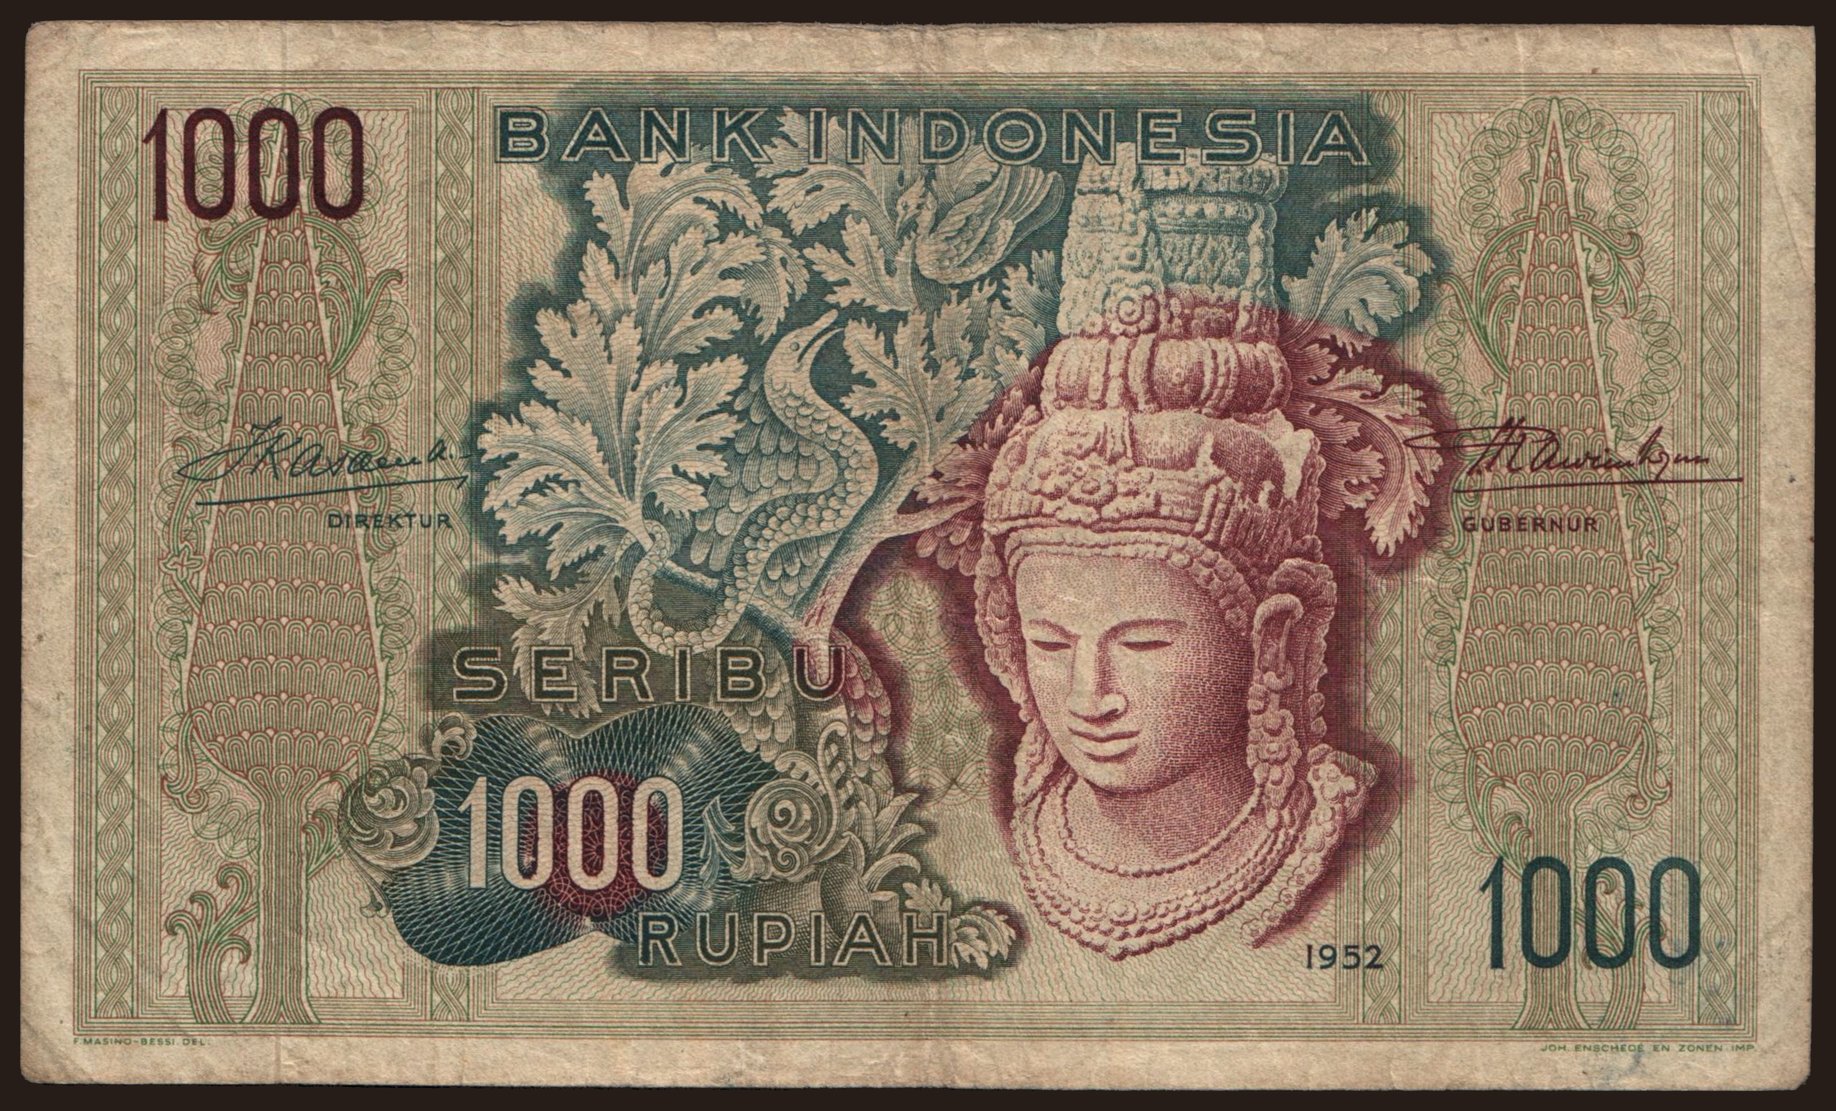 1000 rupiah, 1952